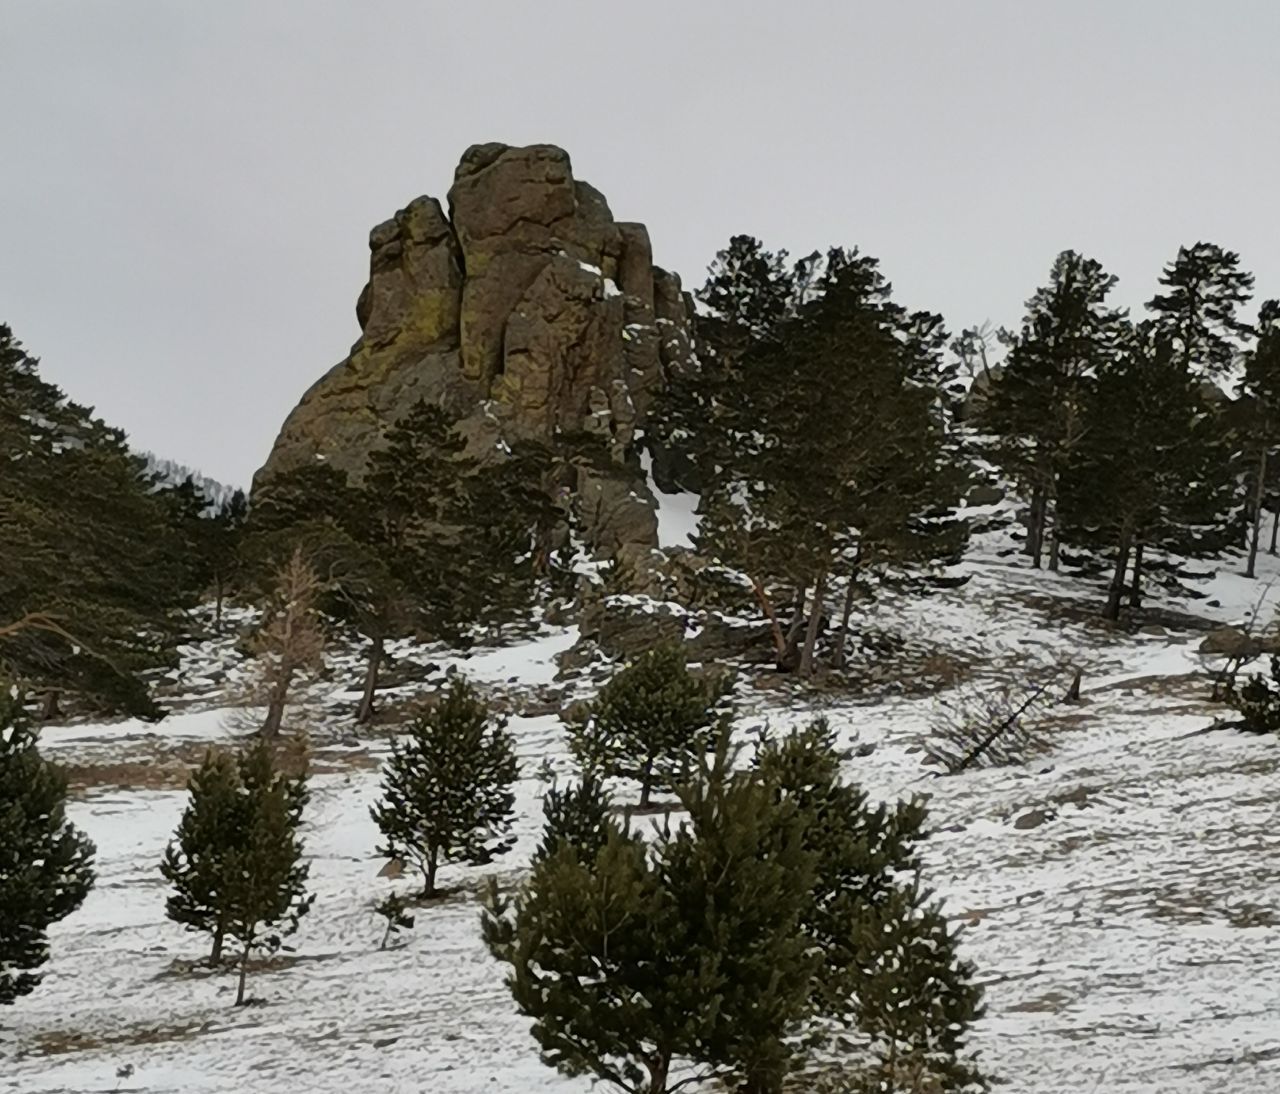 Вот такая скала , напомнившая нам божество индийского эпоса Ганеша, стоит на вершине и созерцает красоту Байкала. - Поездка на зимний Байкал 5-13 февраля 2021 год.